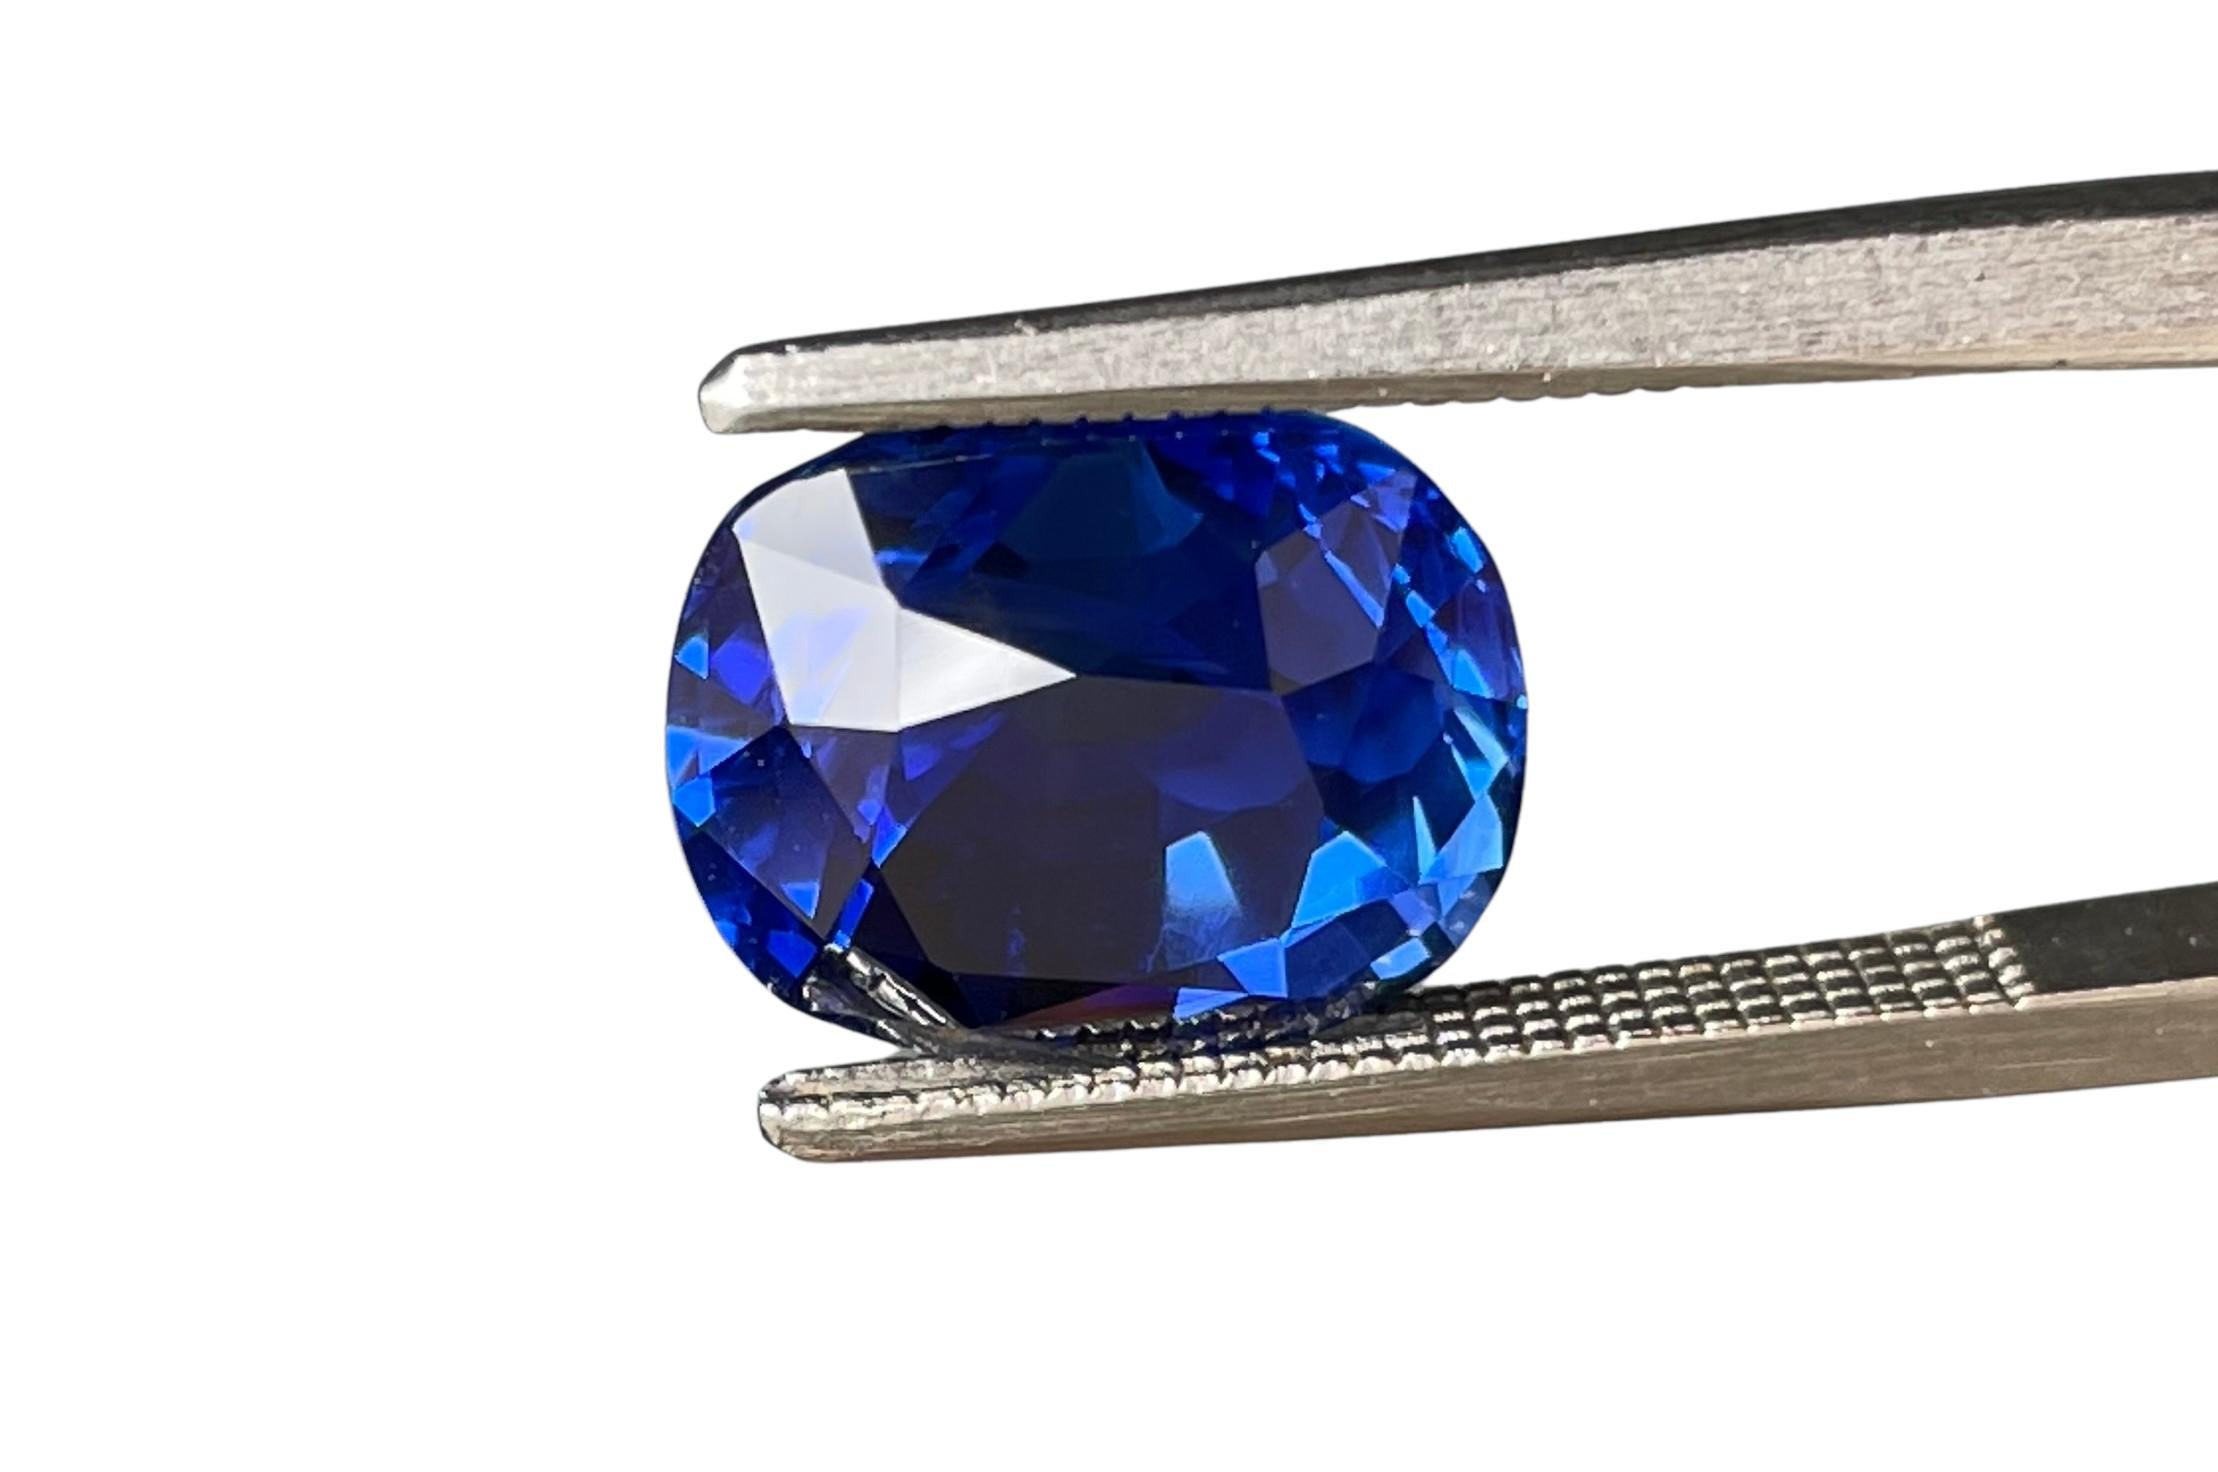 Incroyable saphir GIA de 4 carats taillé en coussin. 

Il s'agit d'une magnifique gemme du KASHMIR, la meilleure origine pour ces pierres. 
Ce saphir ne présente aucun signe de traitement thermique et sa couleur est d'un bleu incroyablement vif.